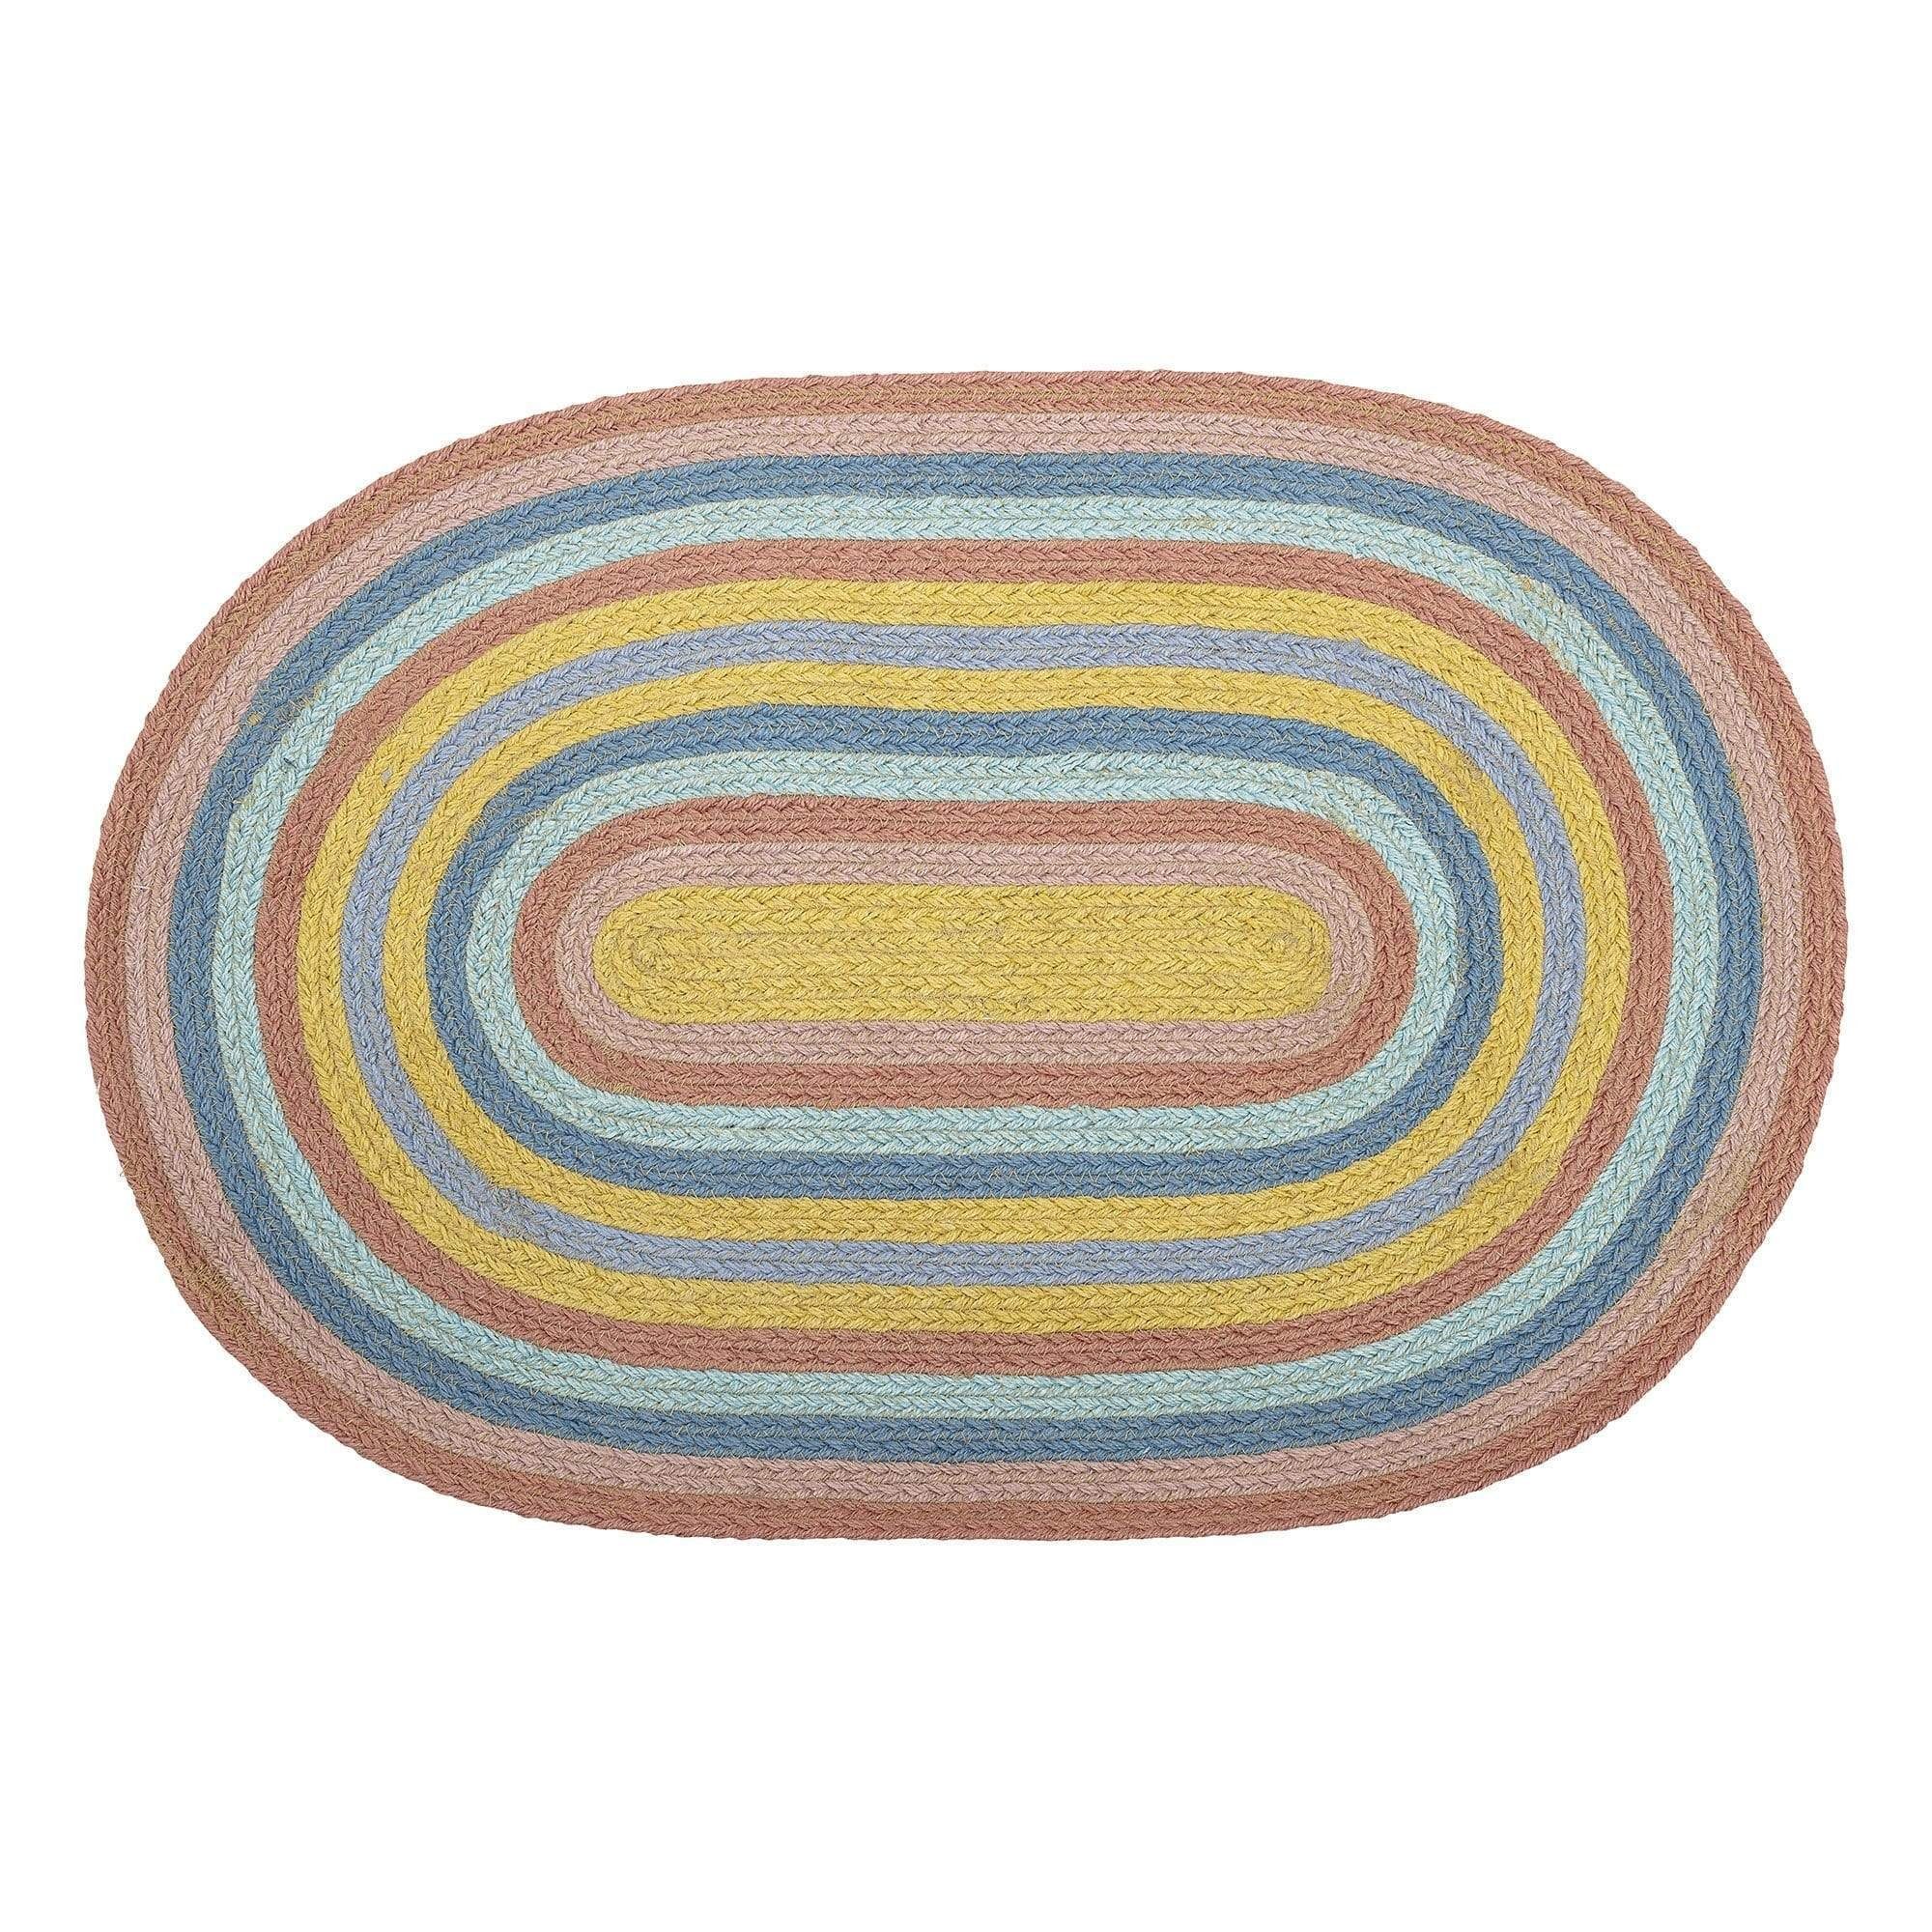 Kinderteppich Bunter Teppich für Kinder, Oval aus Jute, 75 x 50 cm, Bloomingville